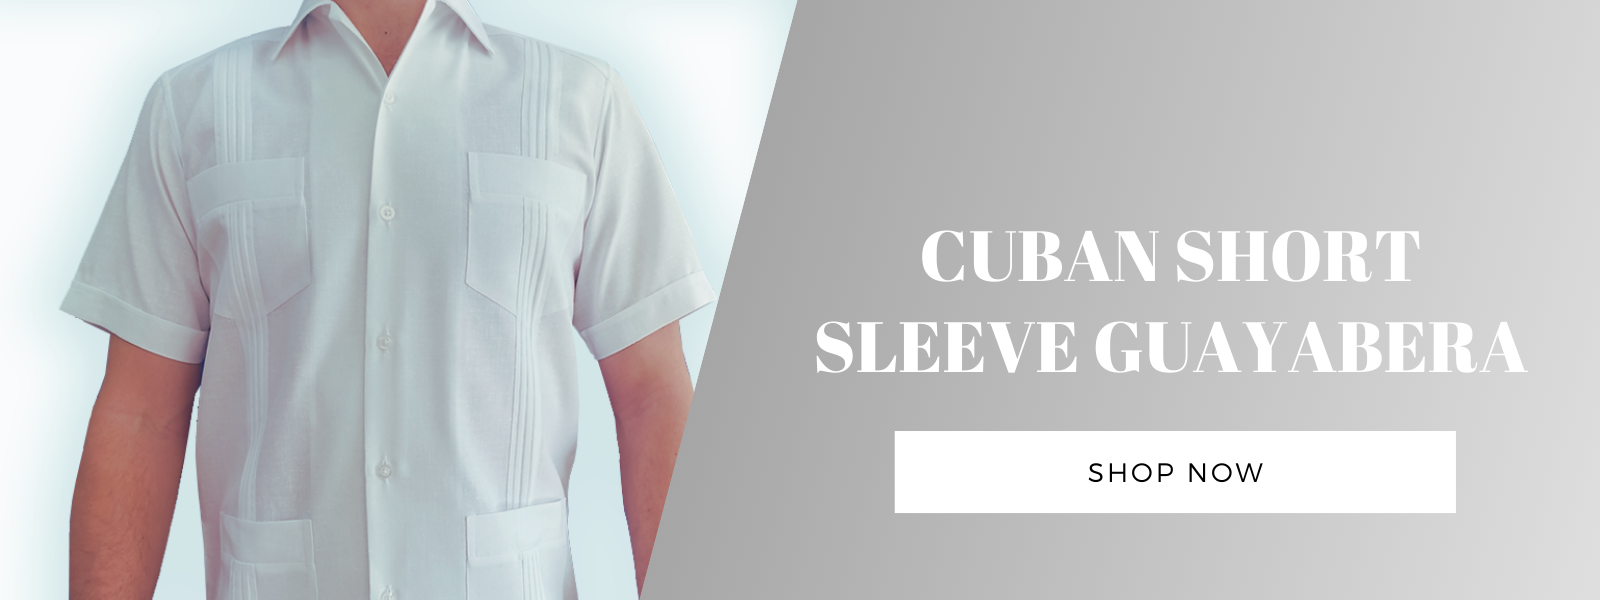 Cuban short sleeve guayabera